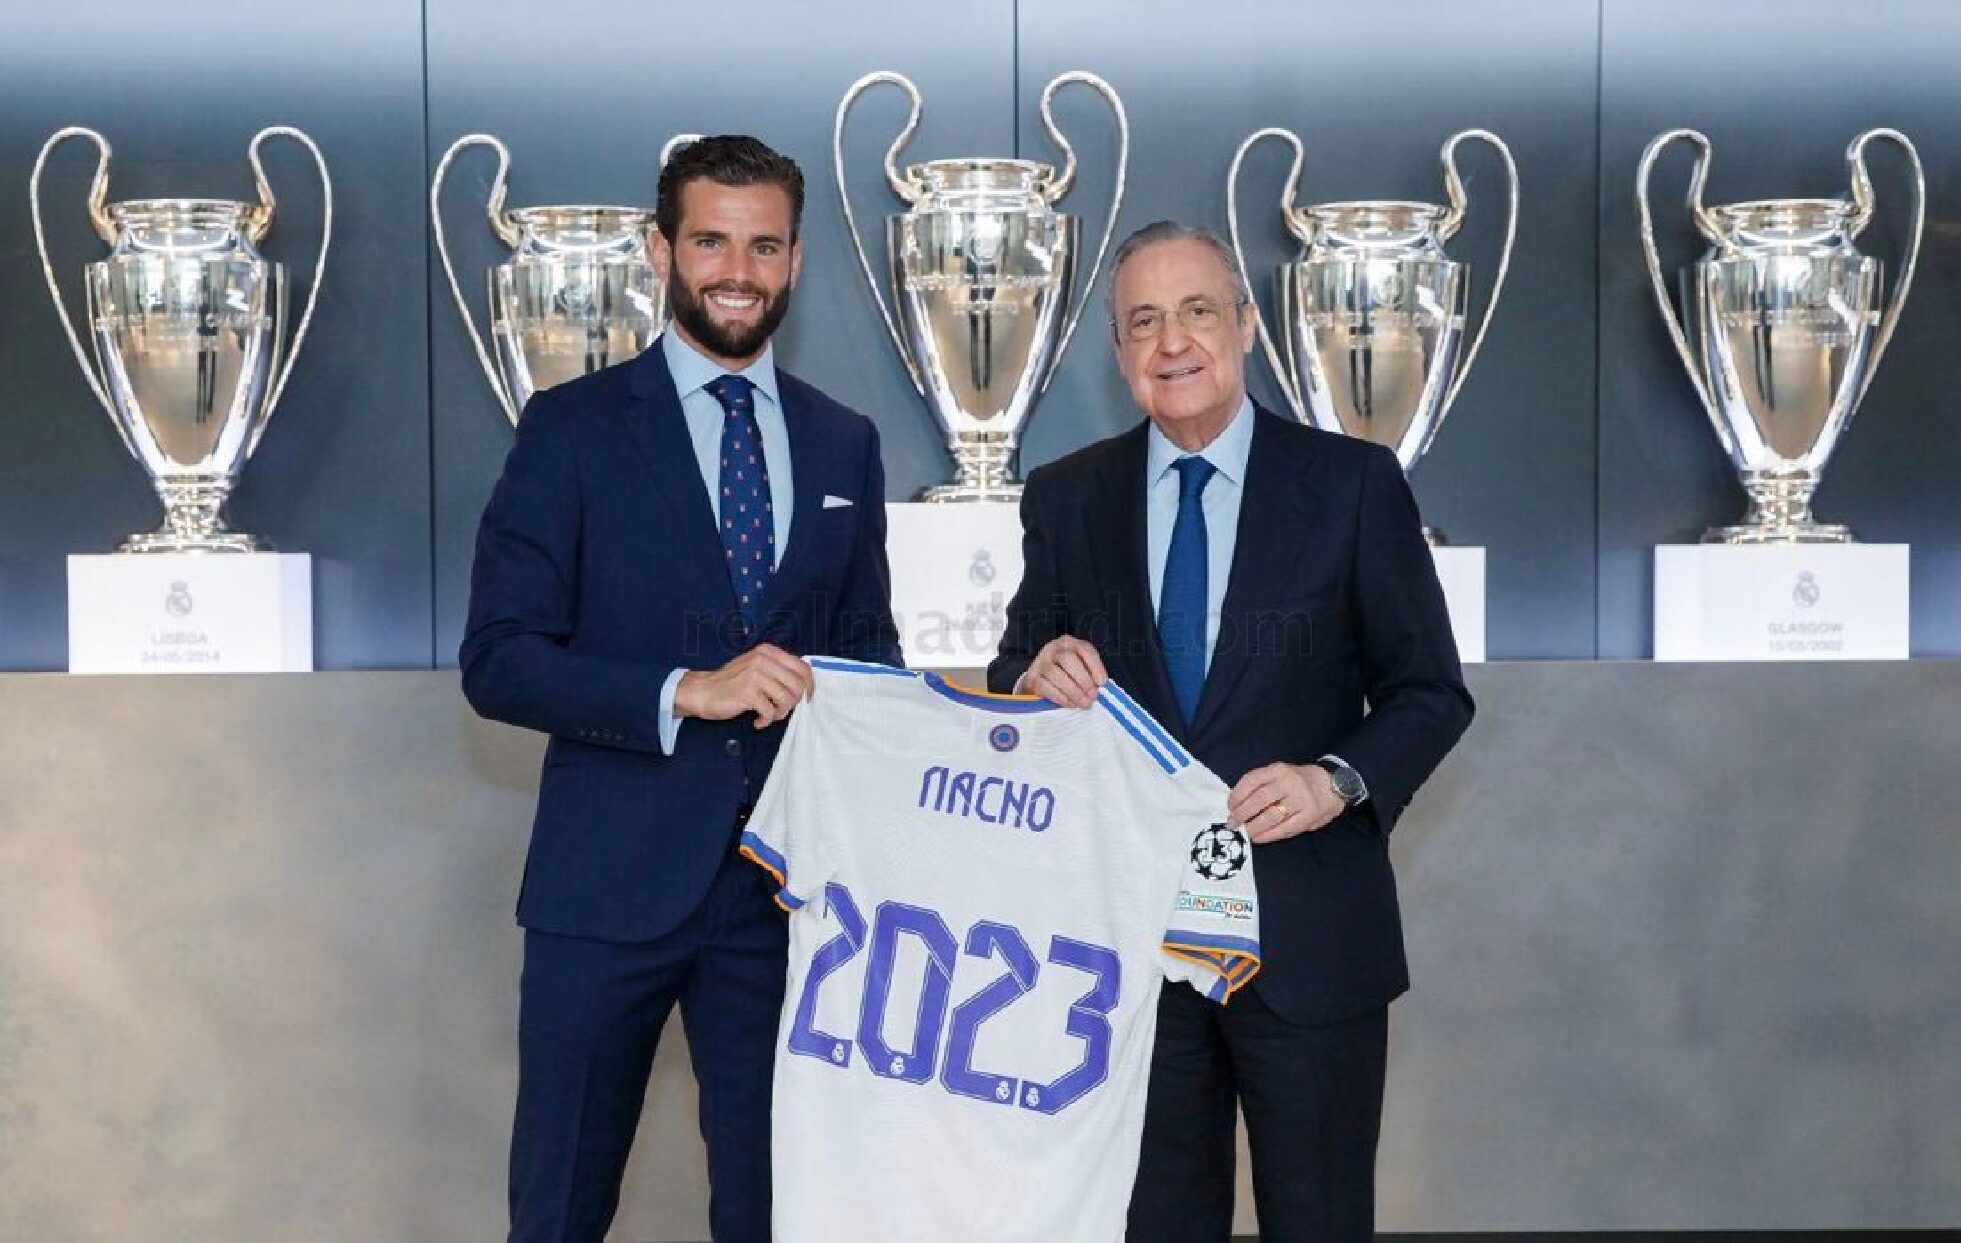  OFICIAL: Nacho Fernández renueva con el Real Madrid hasta 2023.